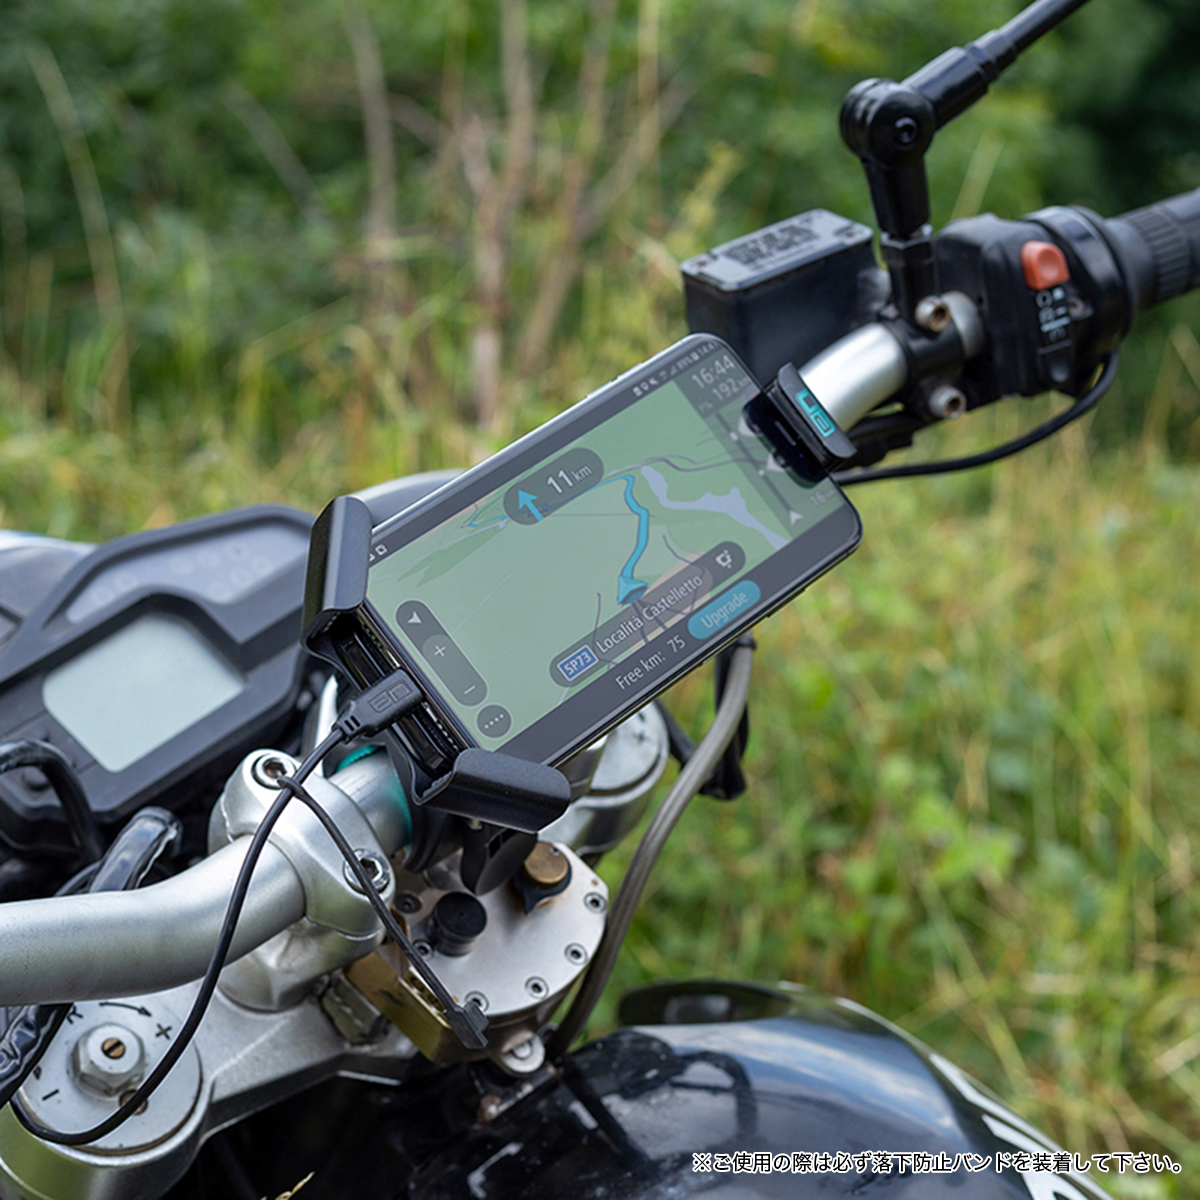 耐久性 でアルミメタルがスタイリッシュなスマホホルダーをご紹介 バイクトピックス レディスバイク